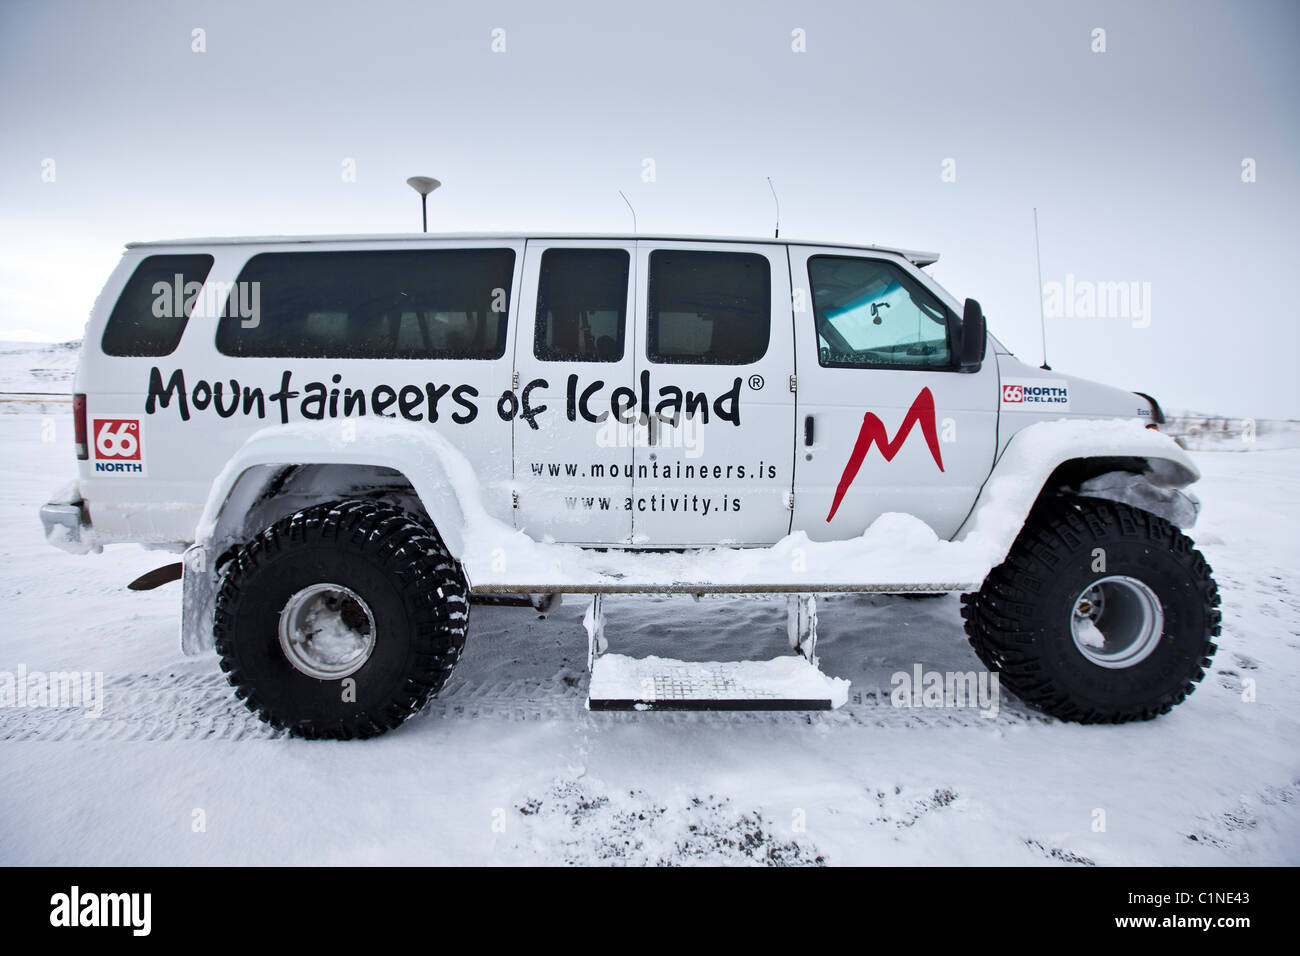 Grandi autocarri modificati per viaggi avventura, Islanda Foto Stock